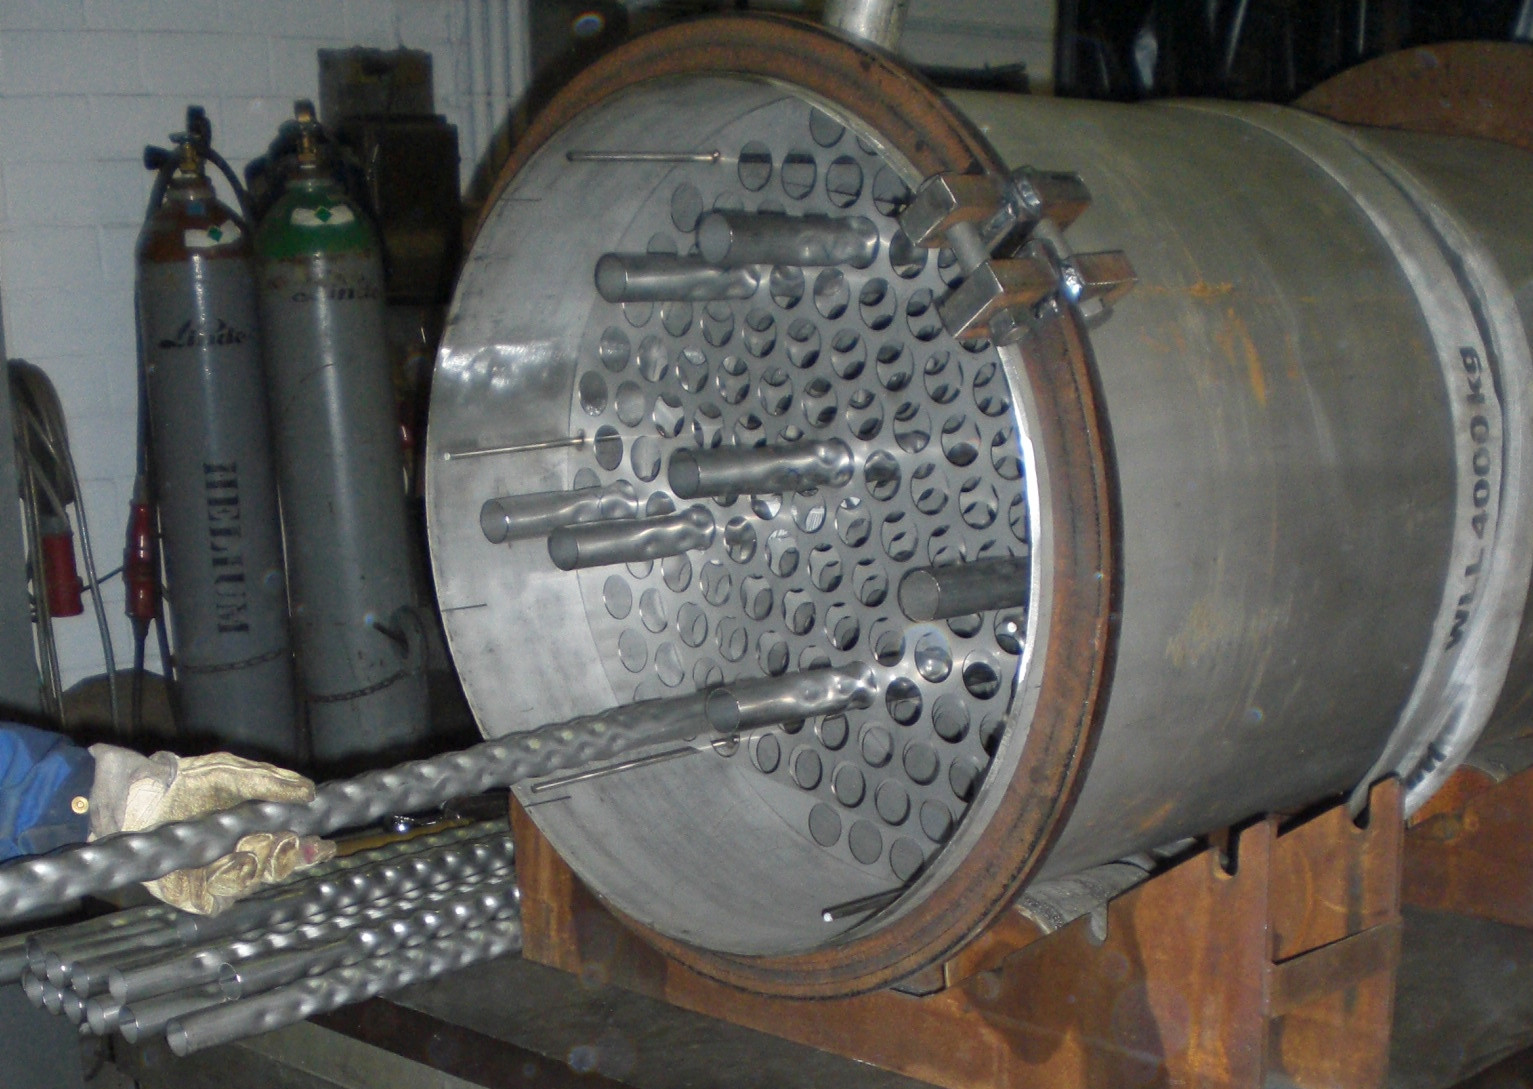 Um den Faktor zwei erhöhter Wärmeübergang ohne Druckverlusterhöhung: Durchführung DIN-gemäß strukturierter Rohre durch den Rohrboden eines prototypischen Rohrbündel-Wärmeübertragers.